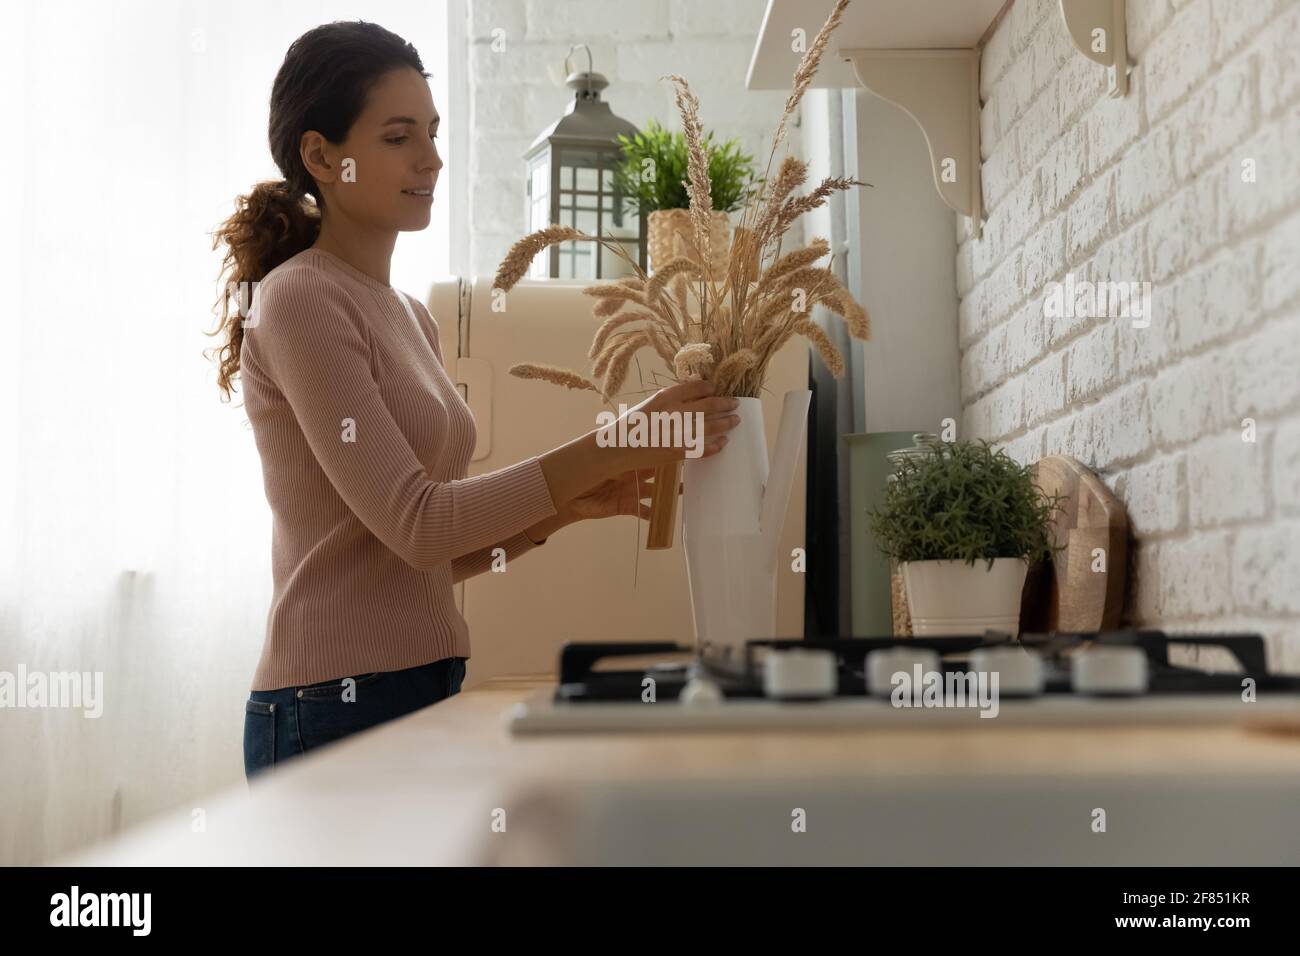 La propriétaire d'une maison organise le bouquet de plantes sèches au comptoir de la cuisine Banque D'Images